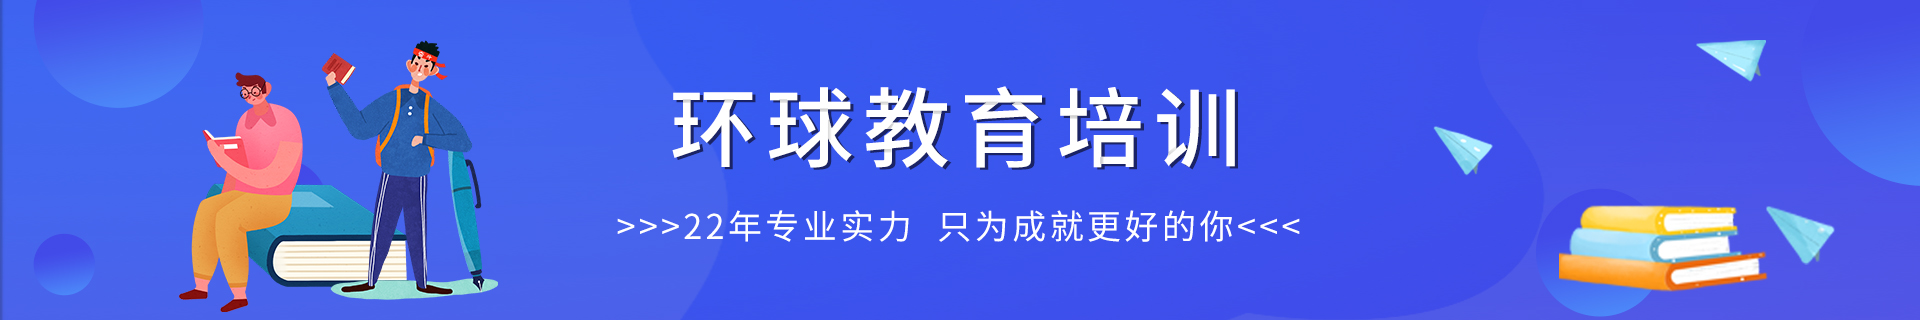 郑州环球雅思教育培训机构